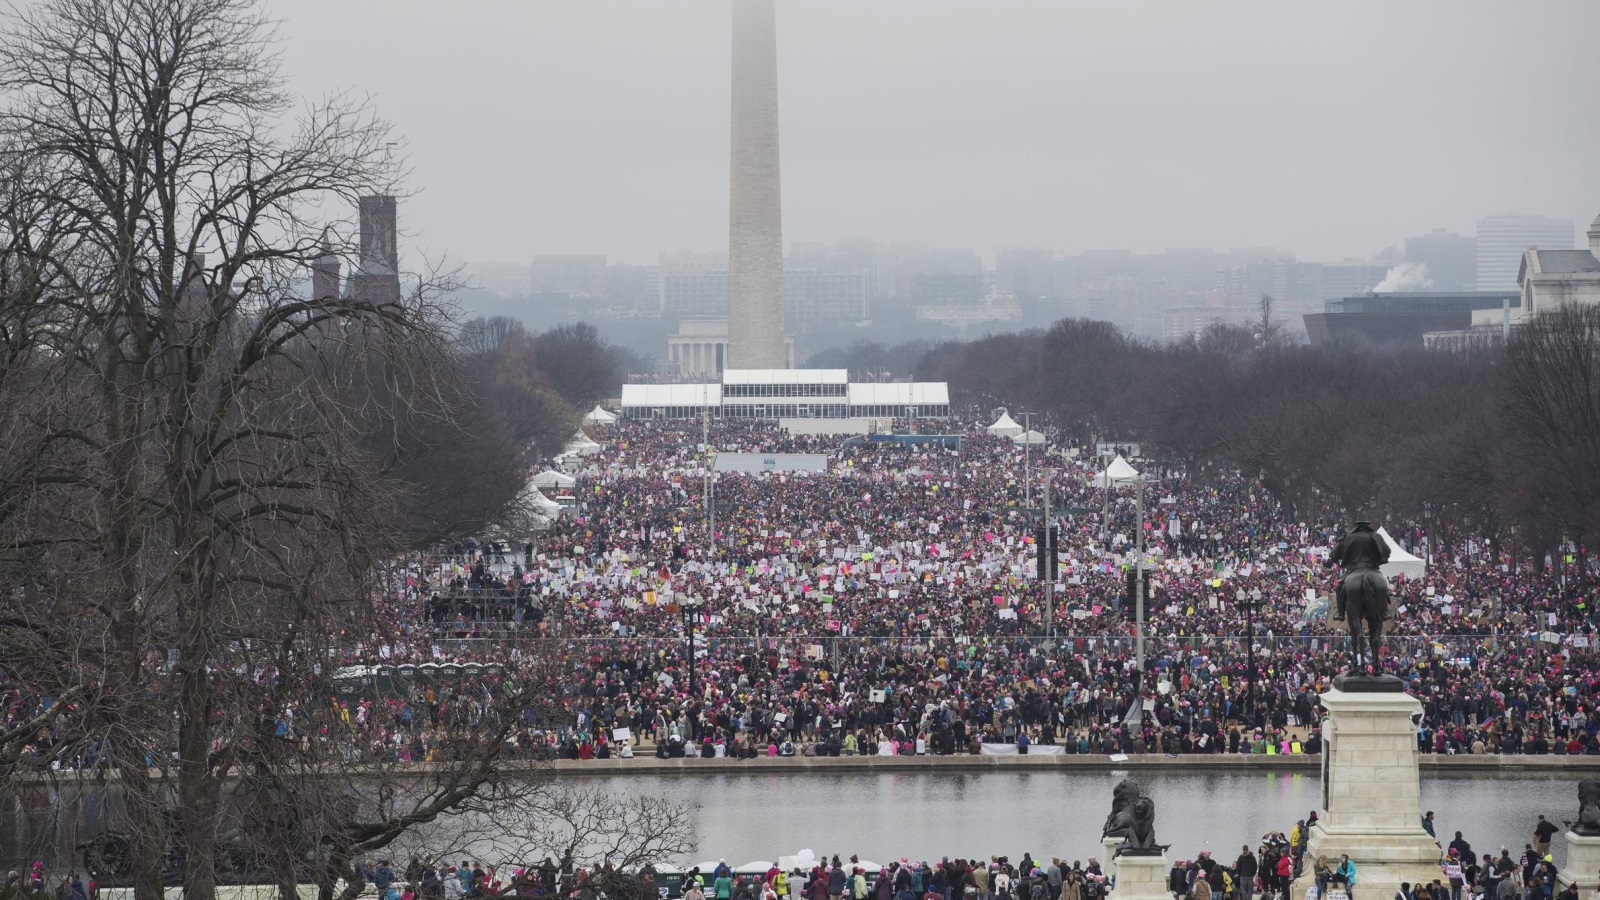 واشنطن العاصمة ومدن أخرى شهدت احتجاجات واسعة ضد سياسات ترمب (الأوروبية)